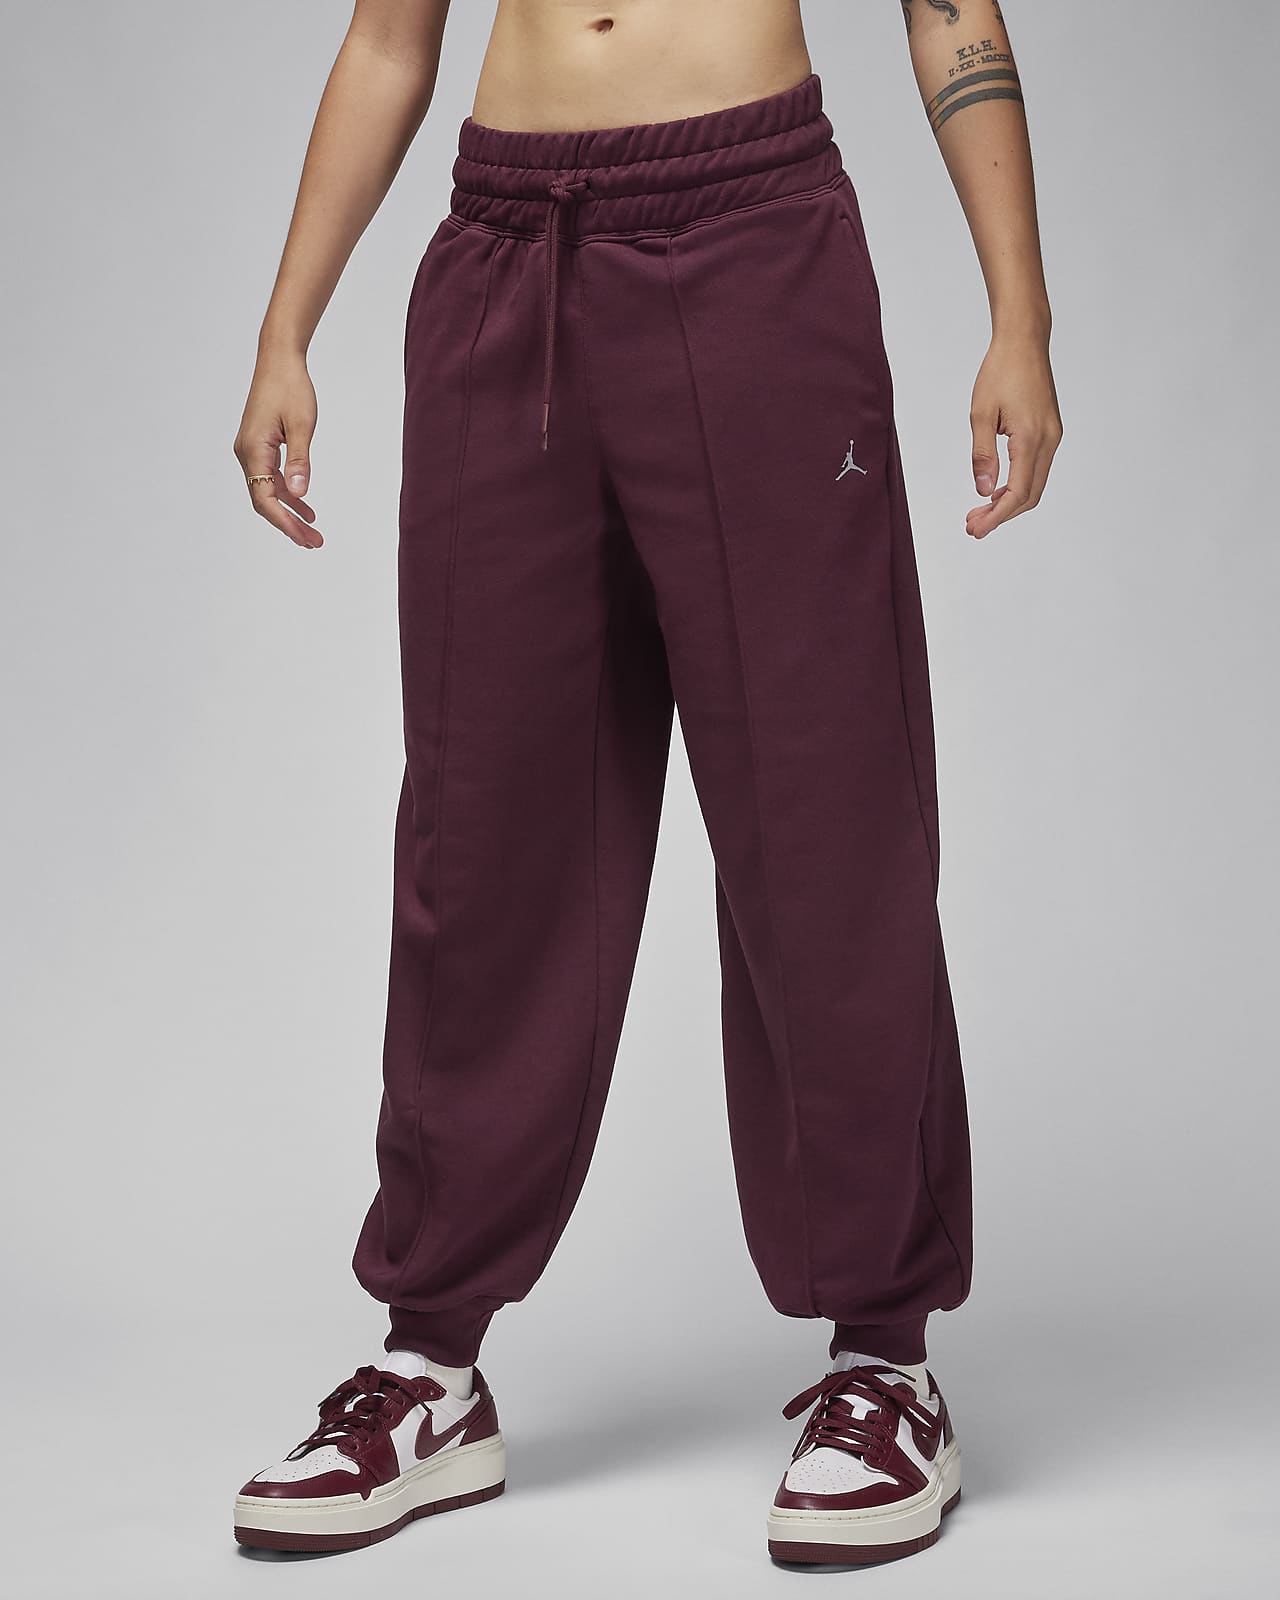 Jordan Sport Women's Graphic Fleece Pants